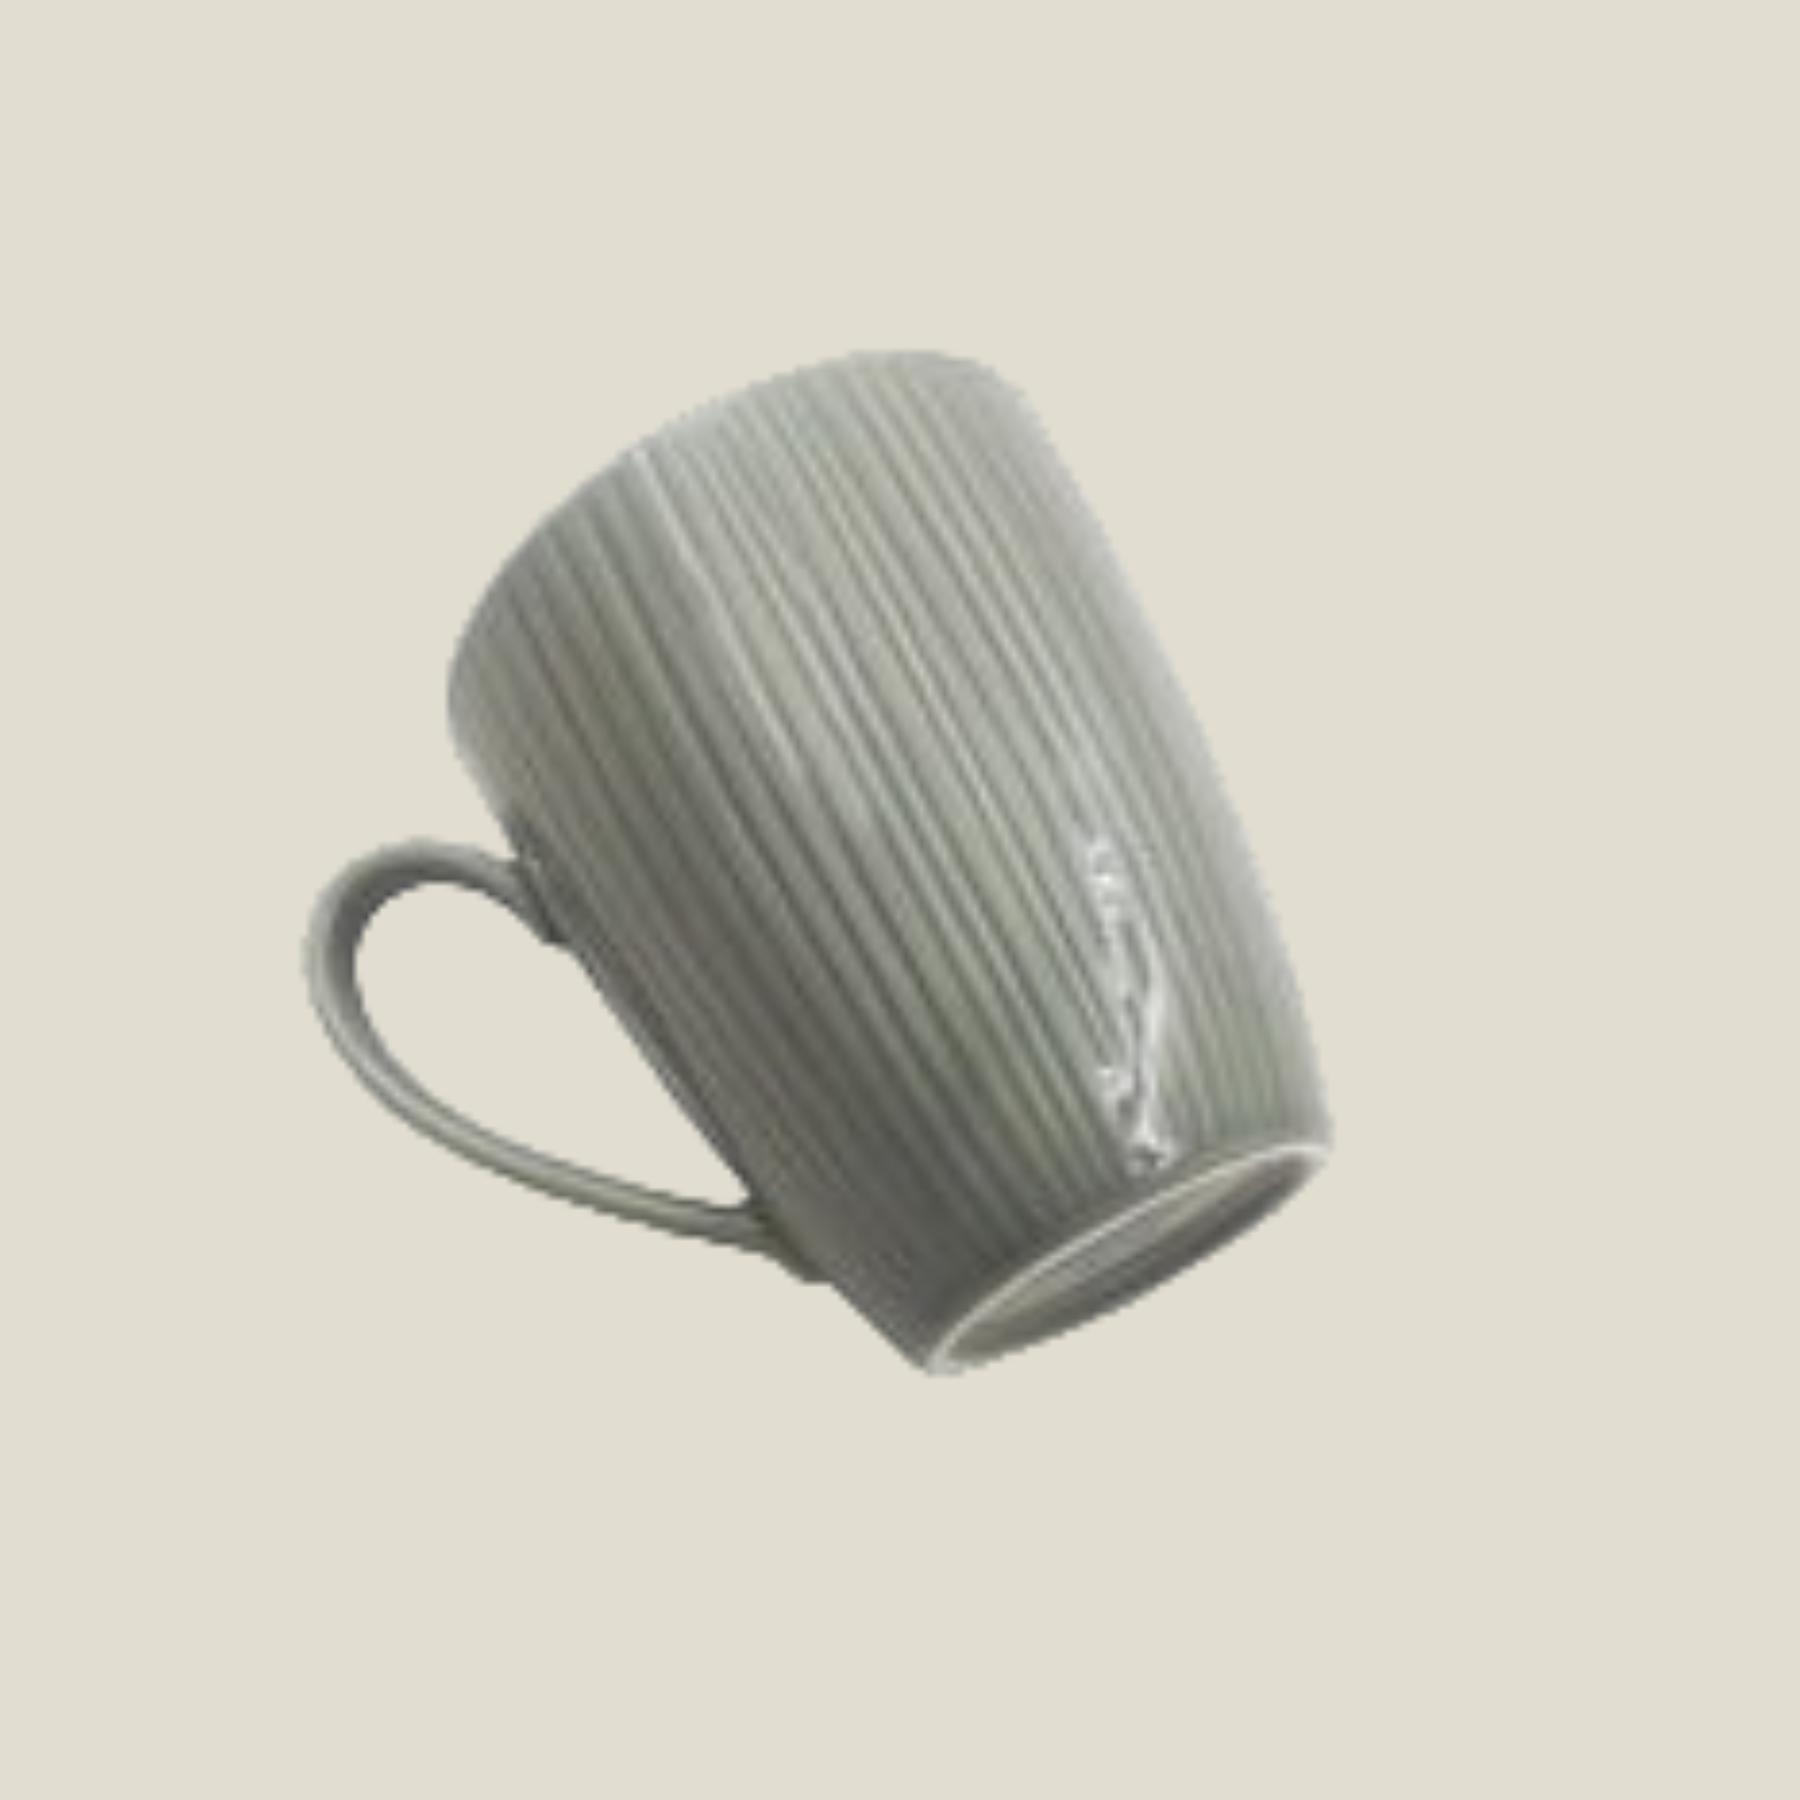 Conifere Ash-4 Pcs Mug